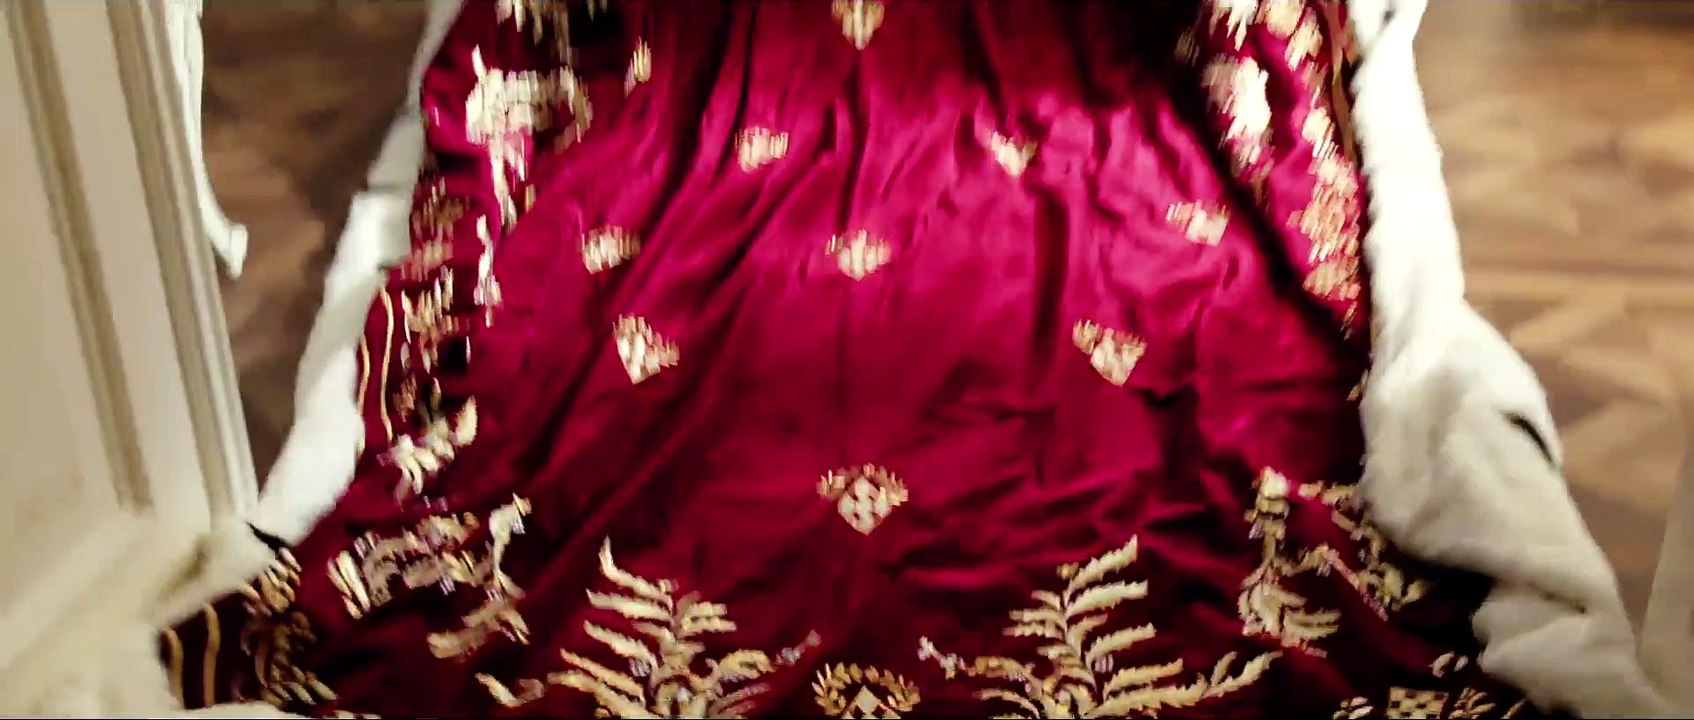 Ludwig II Trailer (2012)